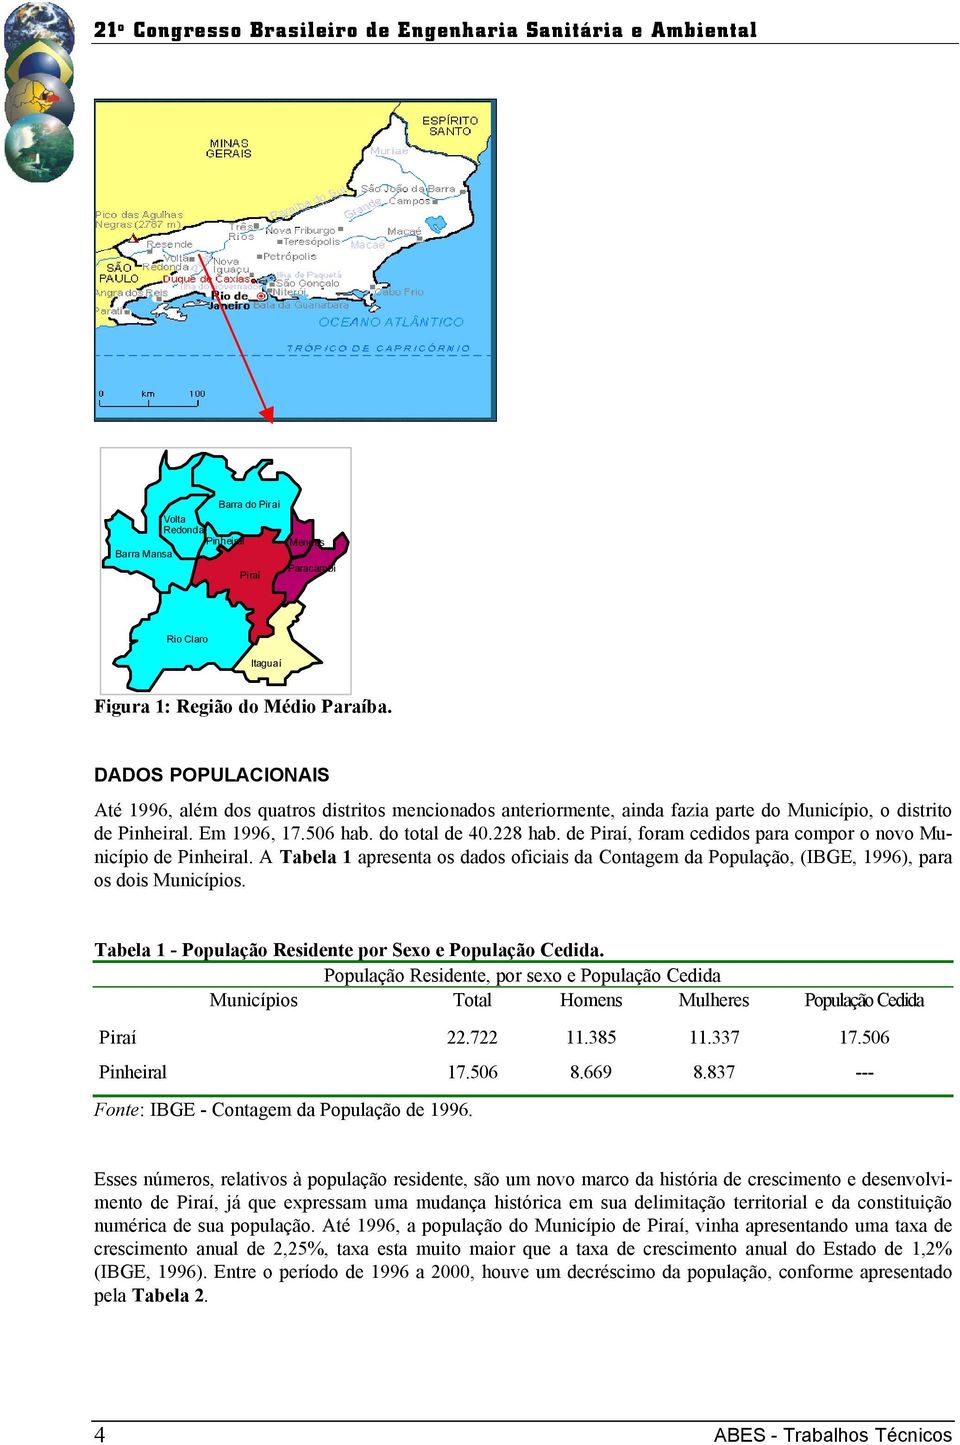 de Piraí, foram cedidos para compor o novo Município de Pinheiral. A Tabela 1 apresenta os dados oficiais da Contagem da População, (IBGE, 1996), para os dois Municípios.